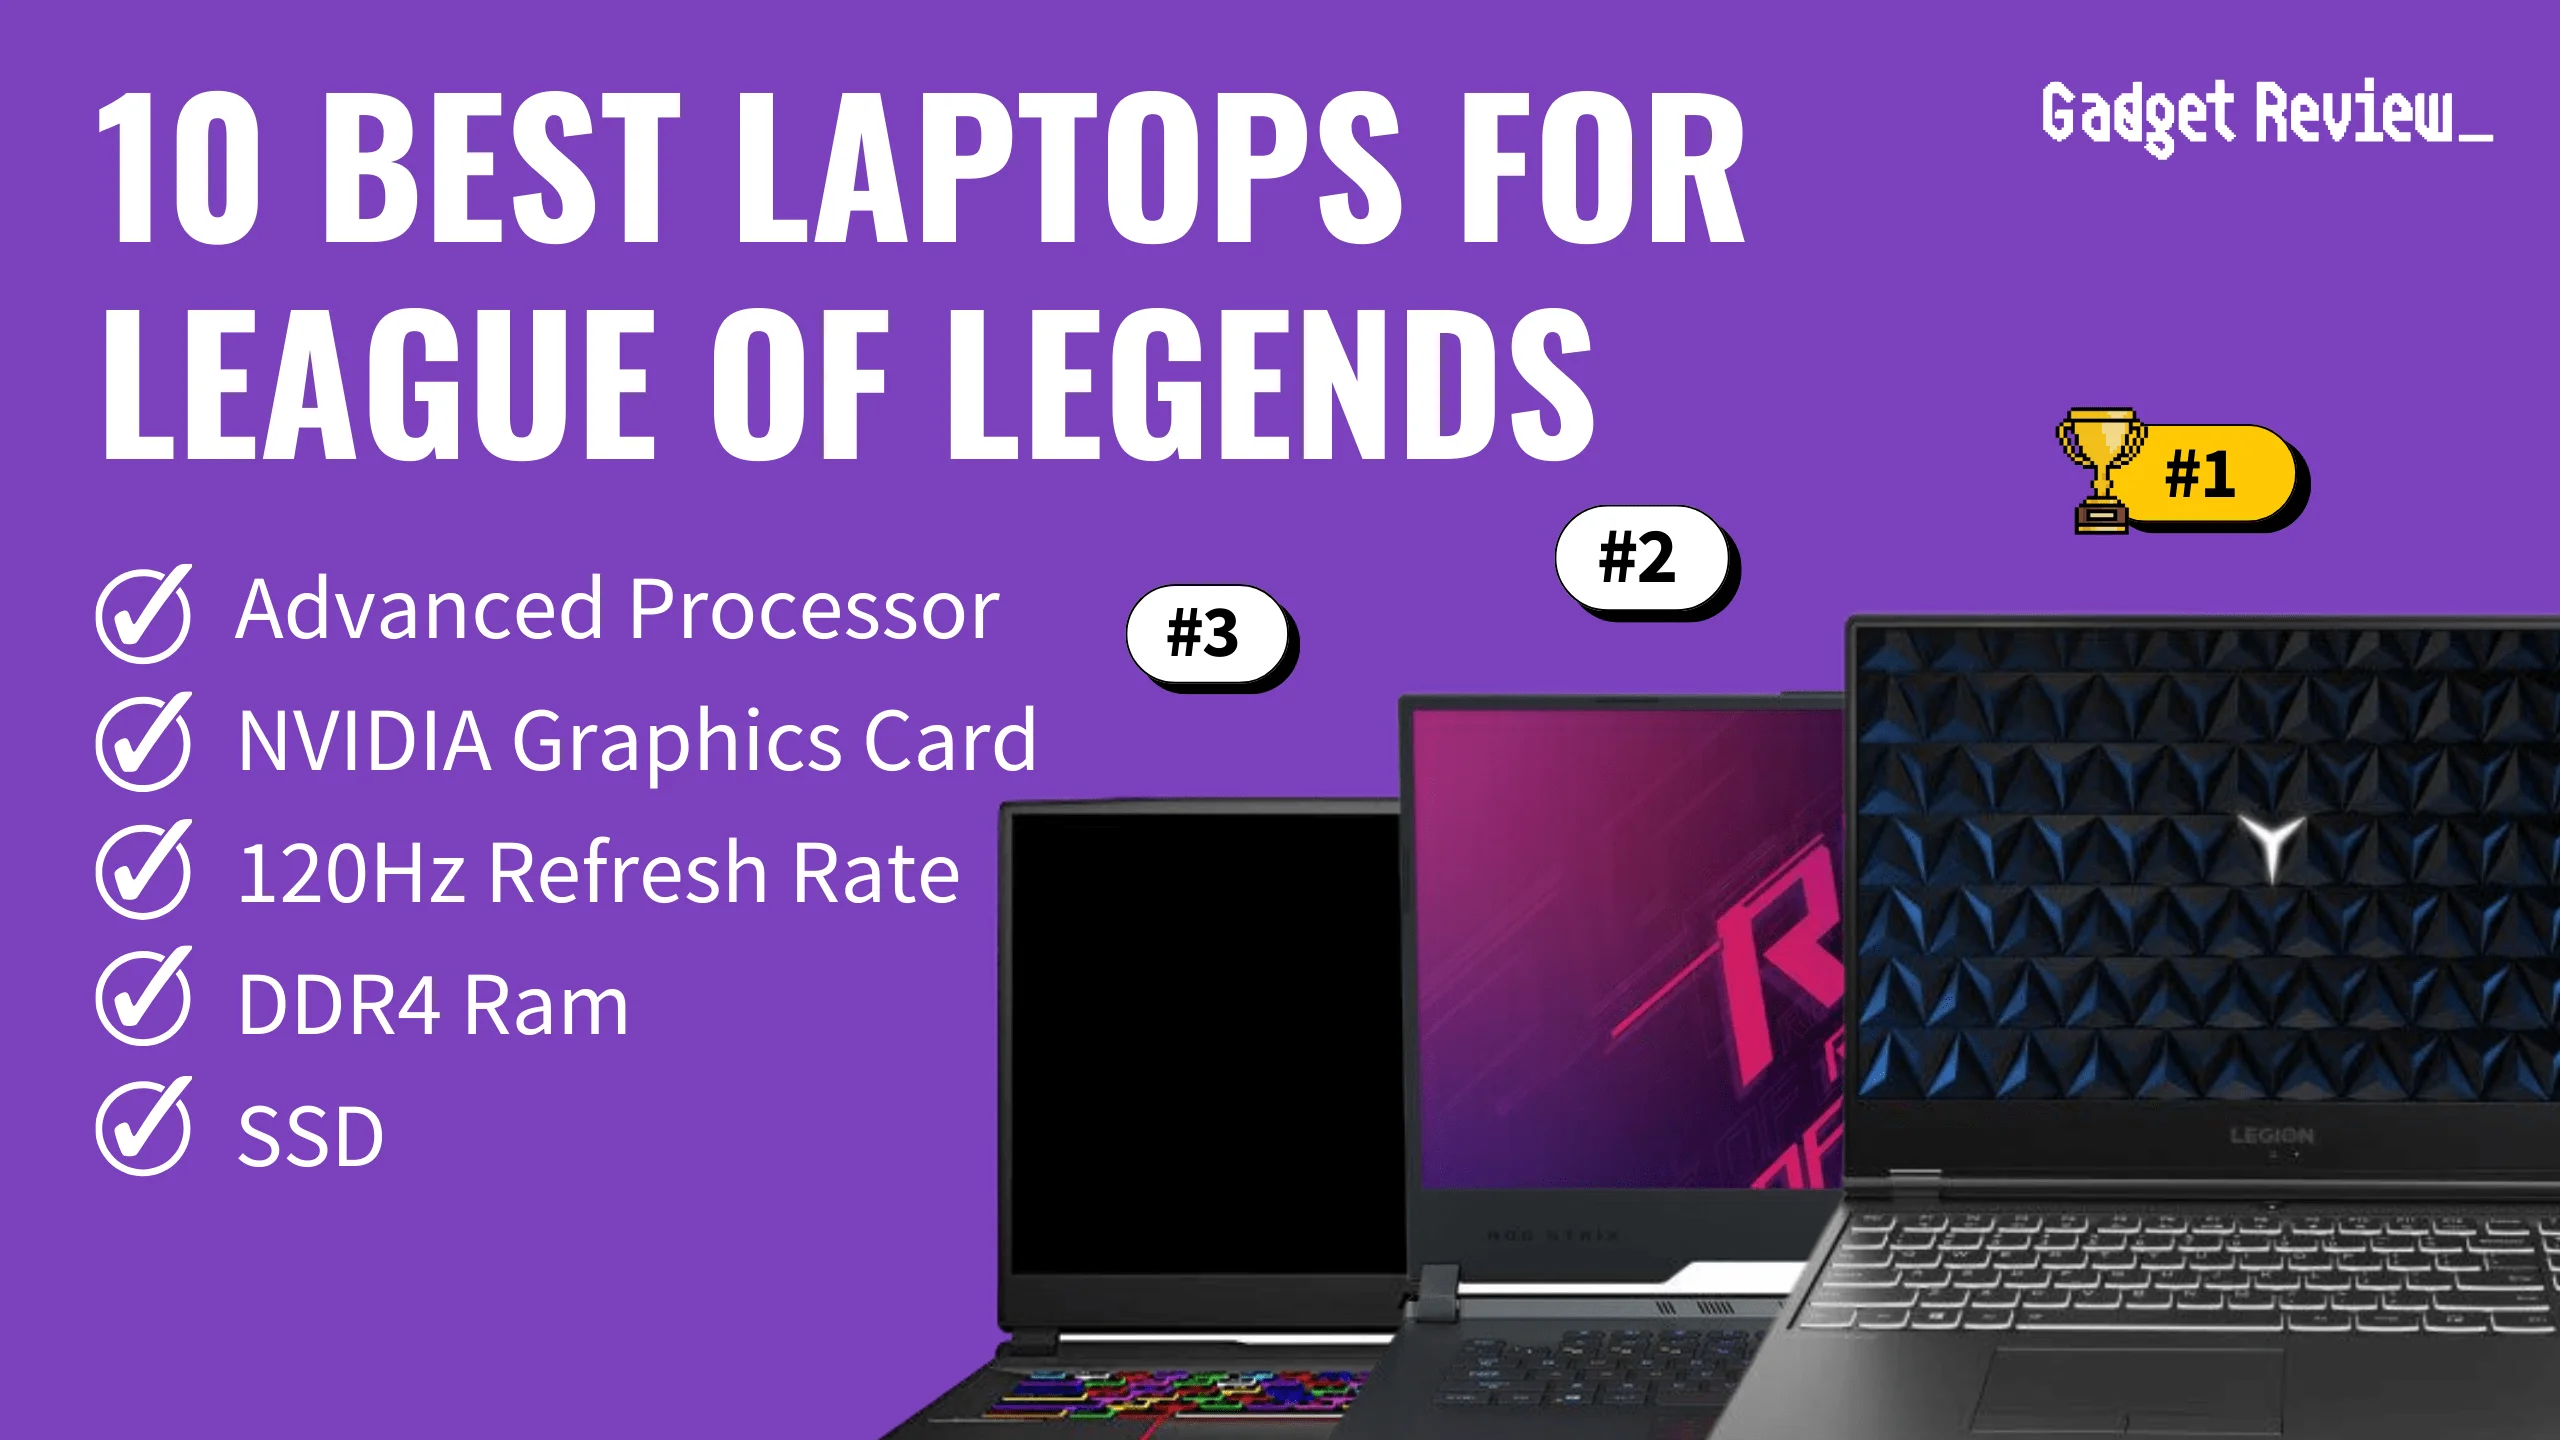 10 Best Laptops for League of Legends